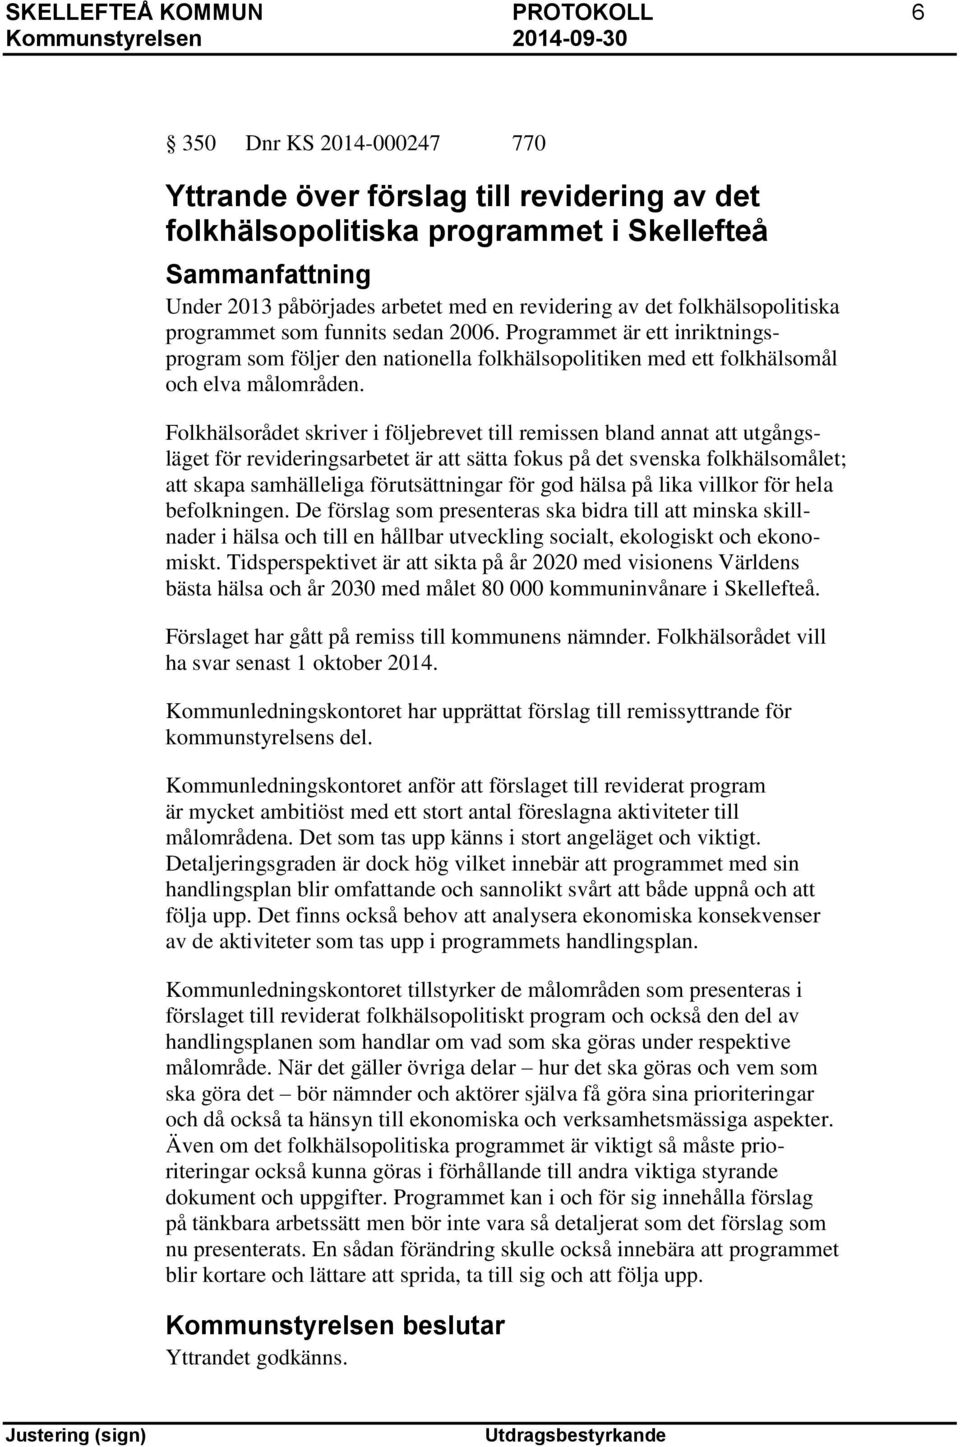 Folkhälsorådet skriver i följebrevet till remissen bland annat att utgångsläget för revideringsarbetet är att sätta fokus på det svenska folkhälsomålet; att skapa samhälleliga förutsättningar för god